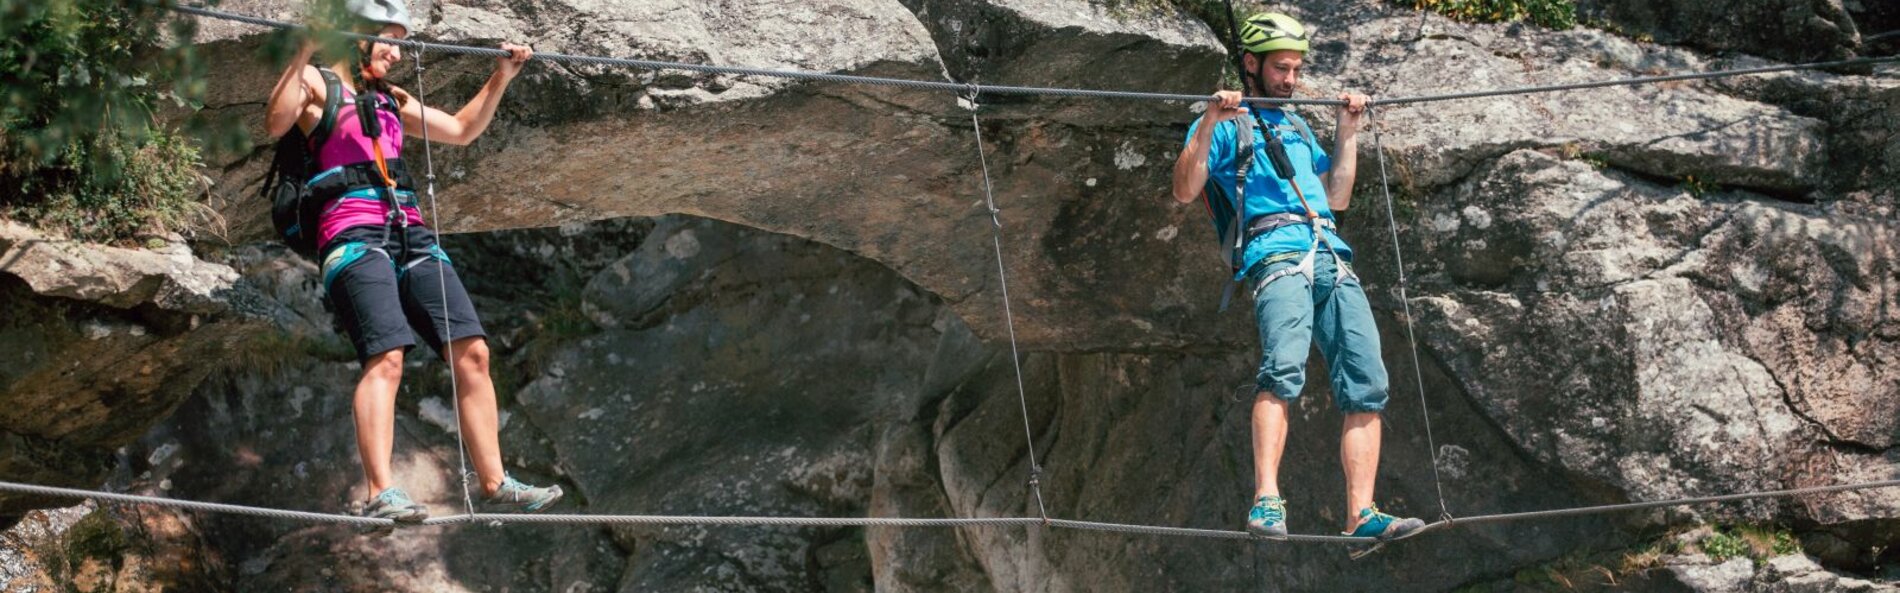 Zwei Kletterer klettern über ein Stahlseil und halten sich mit den Händen an einem weiteren Seil fest. Im Hintergrund eine Felswand und aufgeschäumtes Wasser.